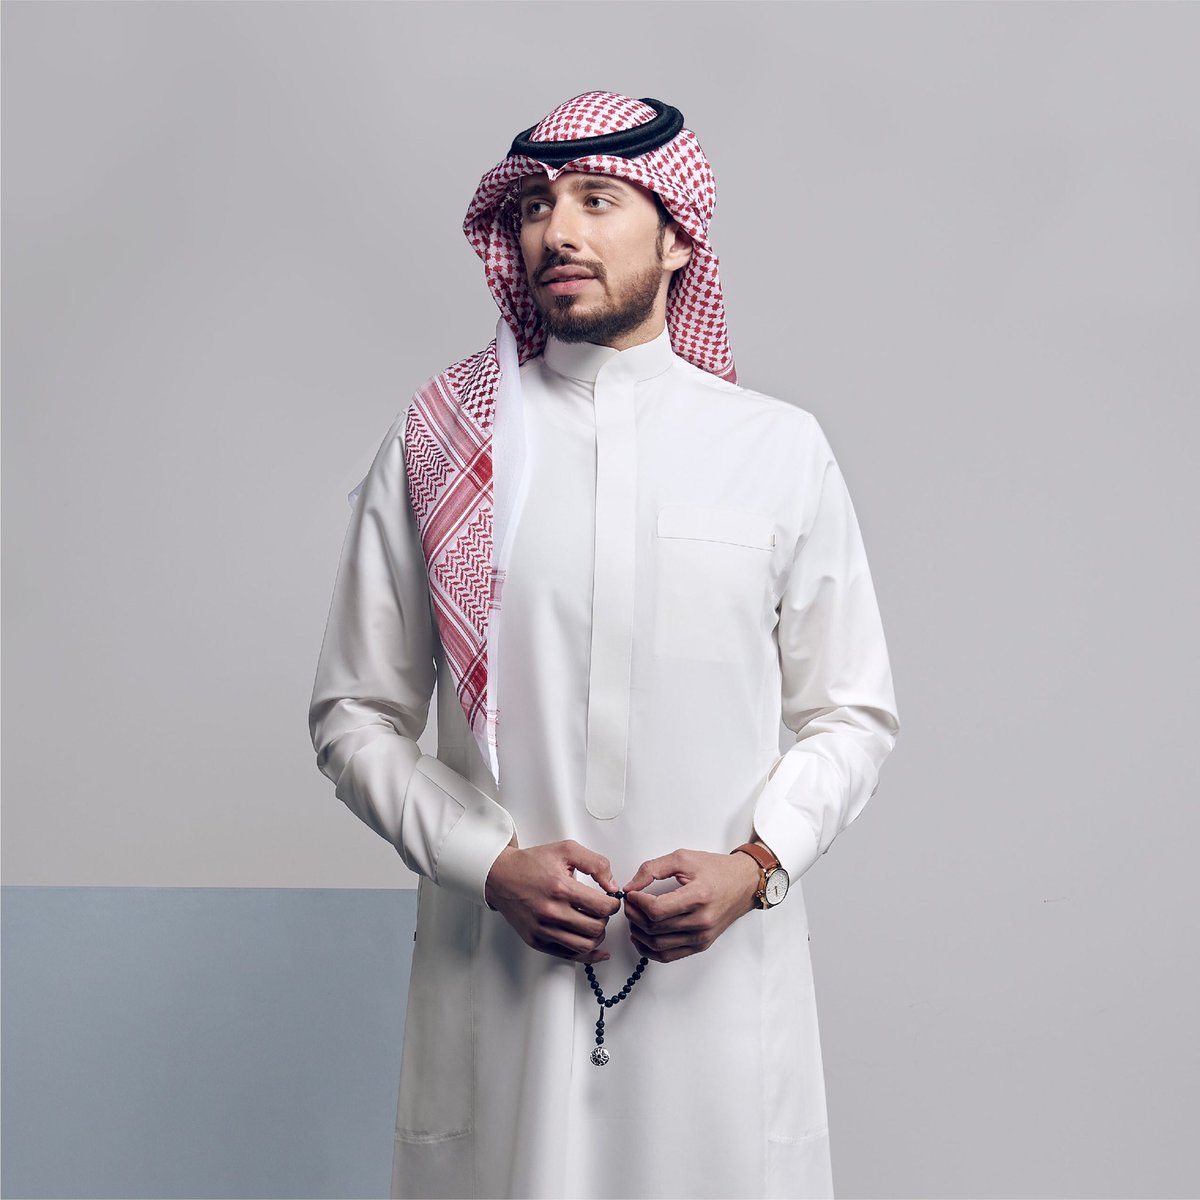 عامة سنوات المراهقة لاري بلمونت  افضل ثوب رجالي سعودي بتصاميم متنوعة بالصور - مدونة نيشان